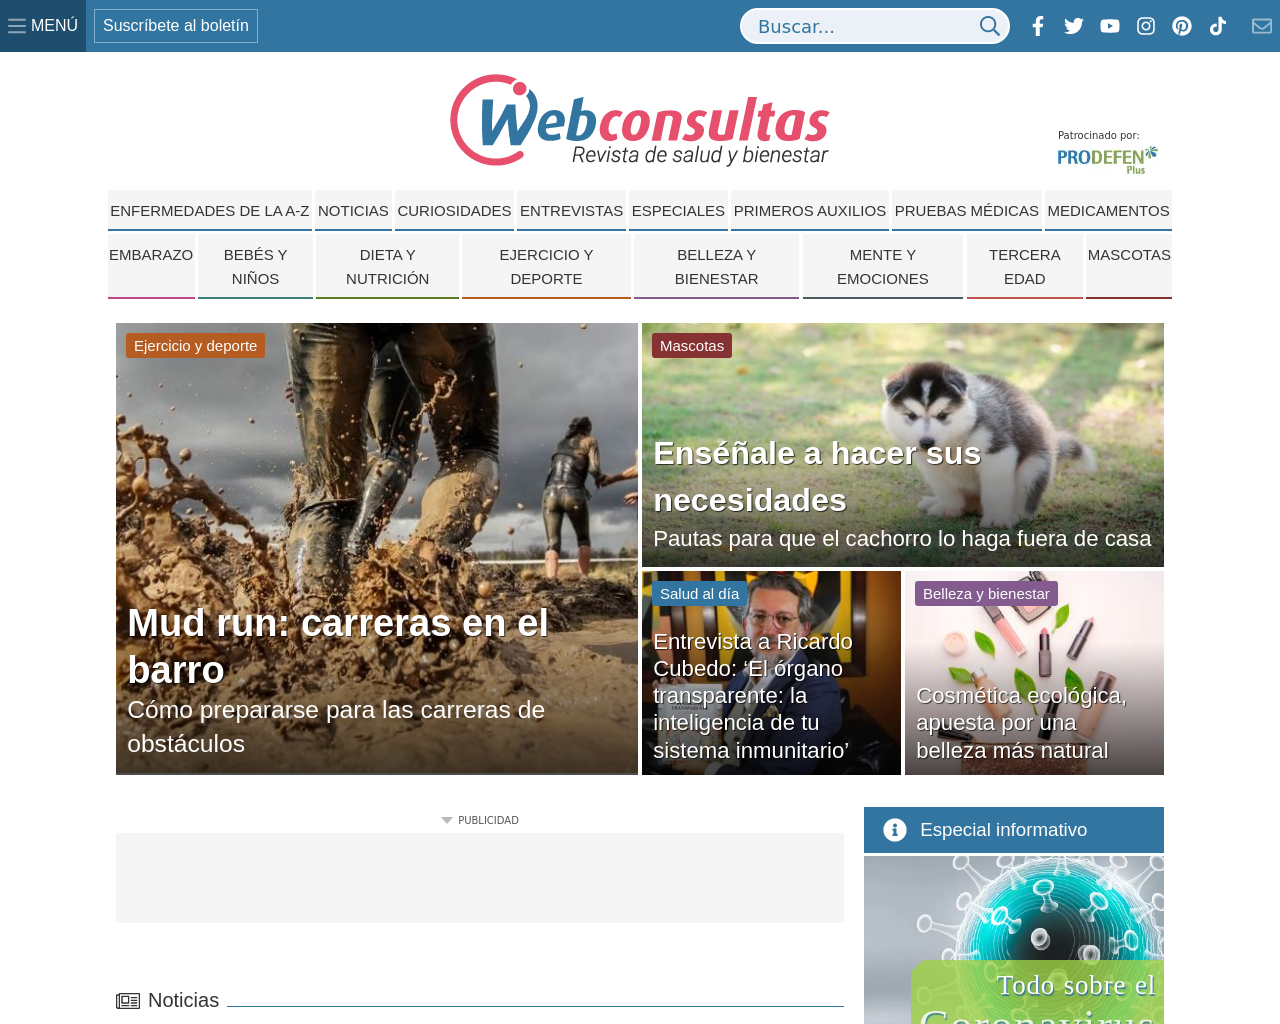 www.webconsultas.com